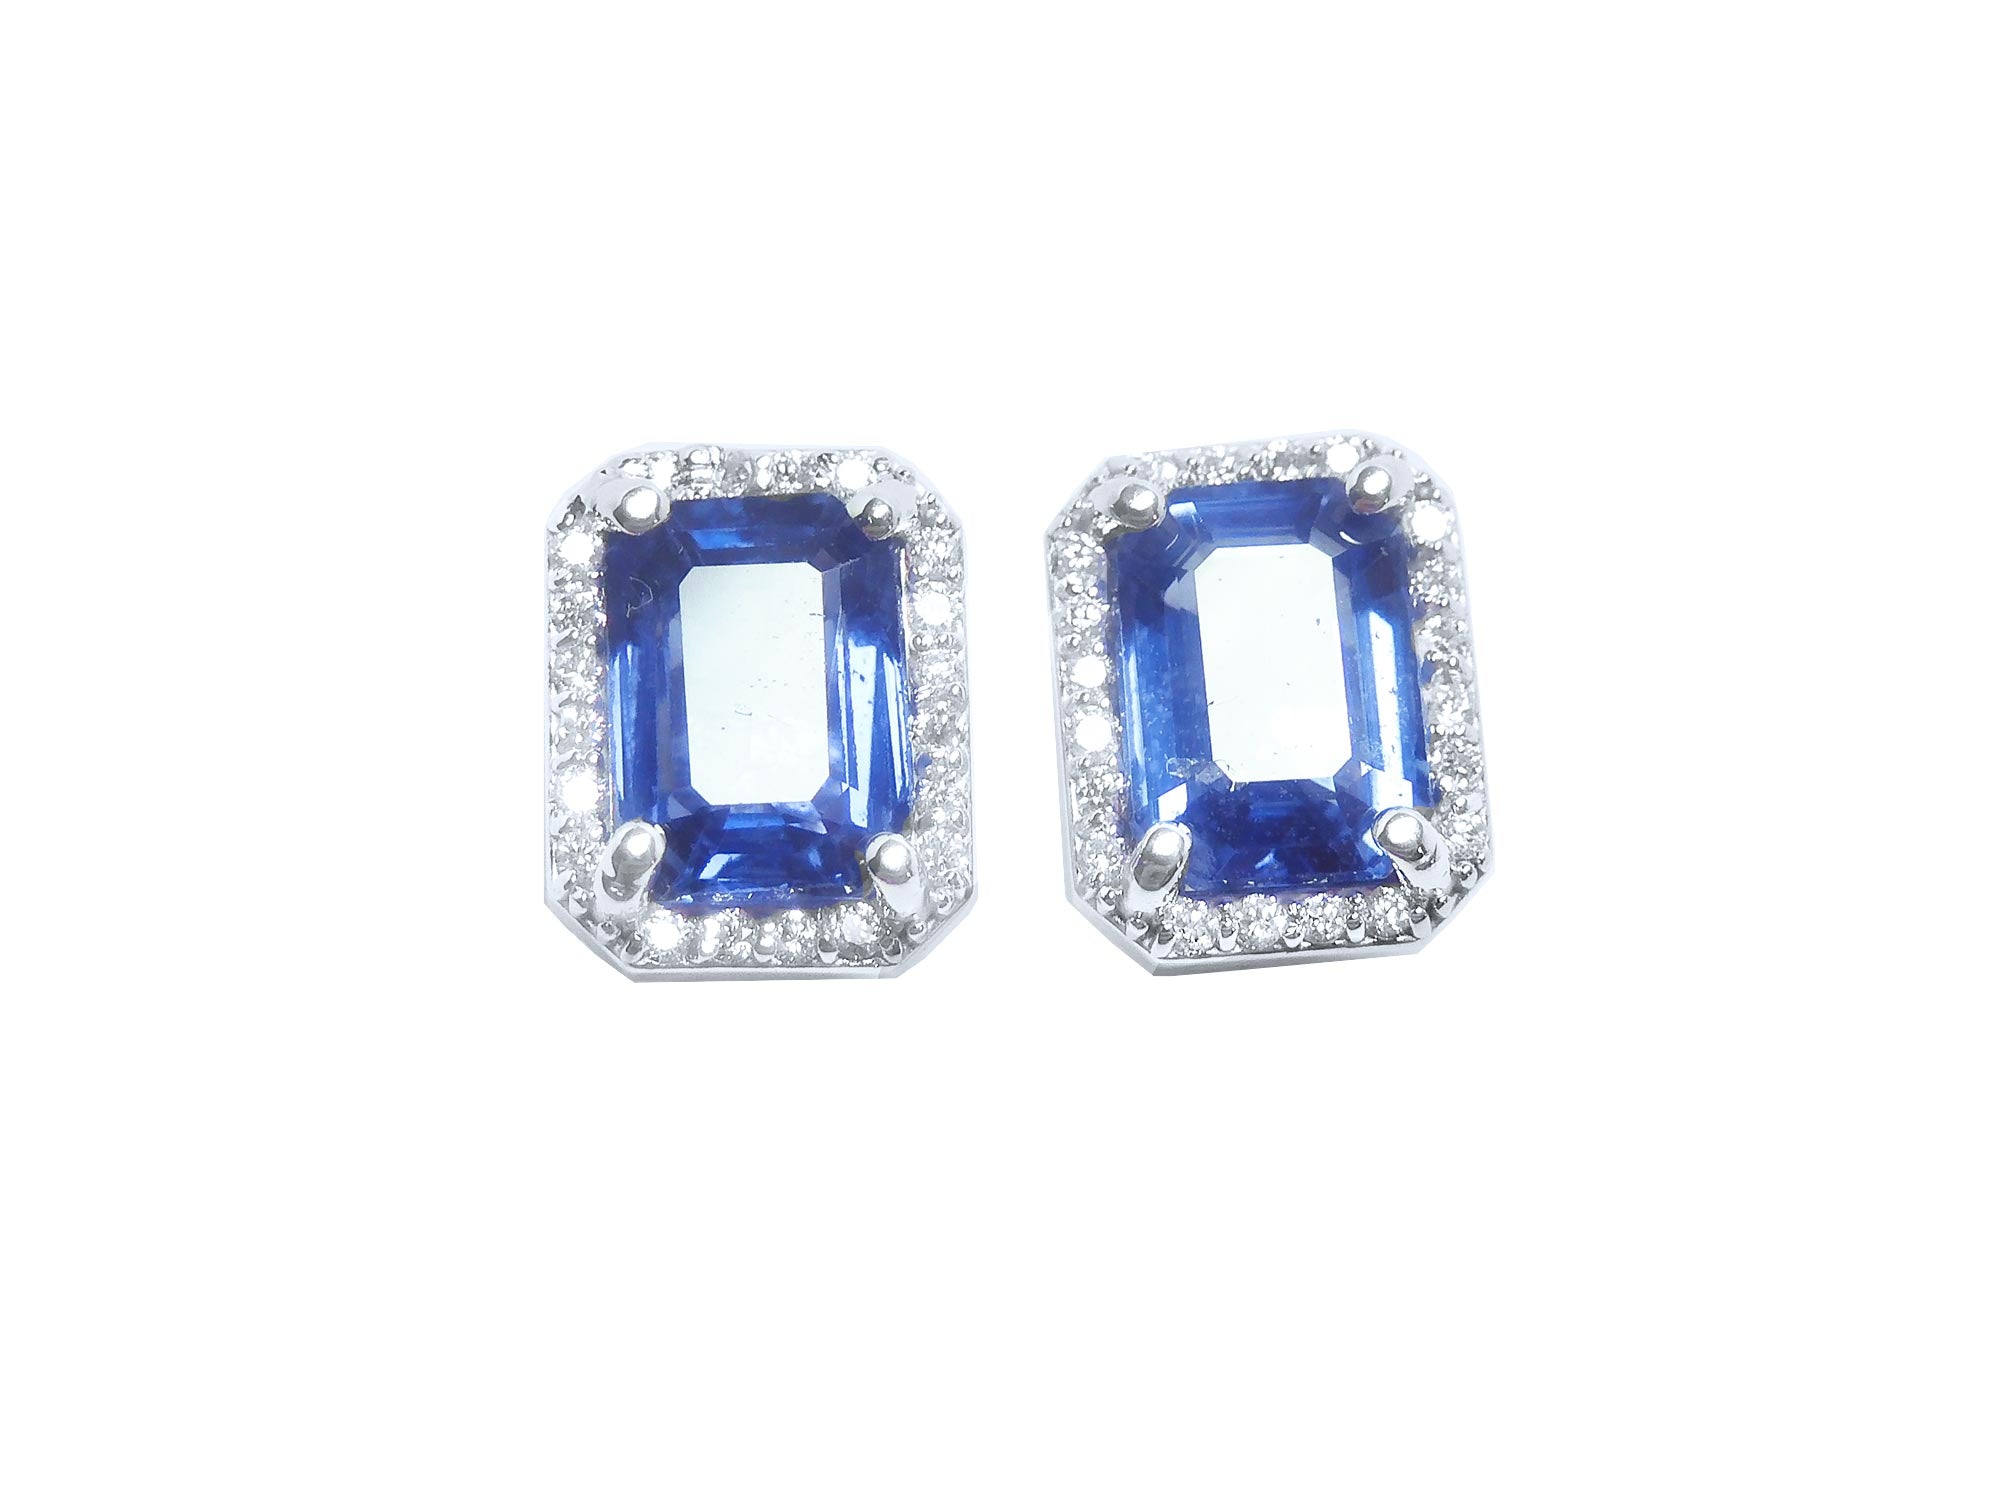 Halo sapphire stud earrings